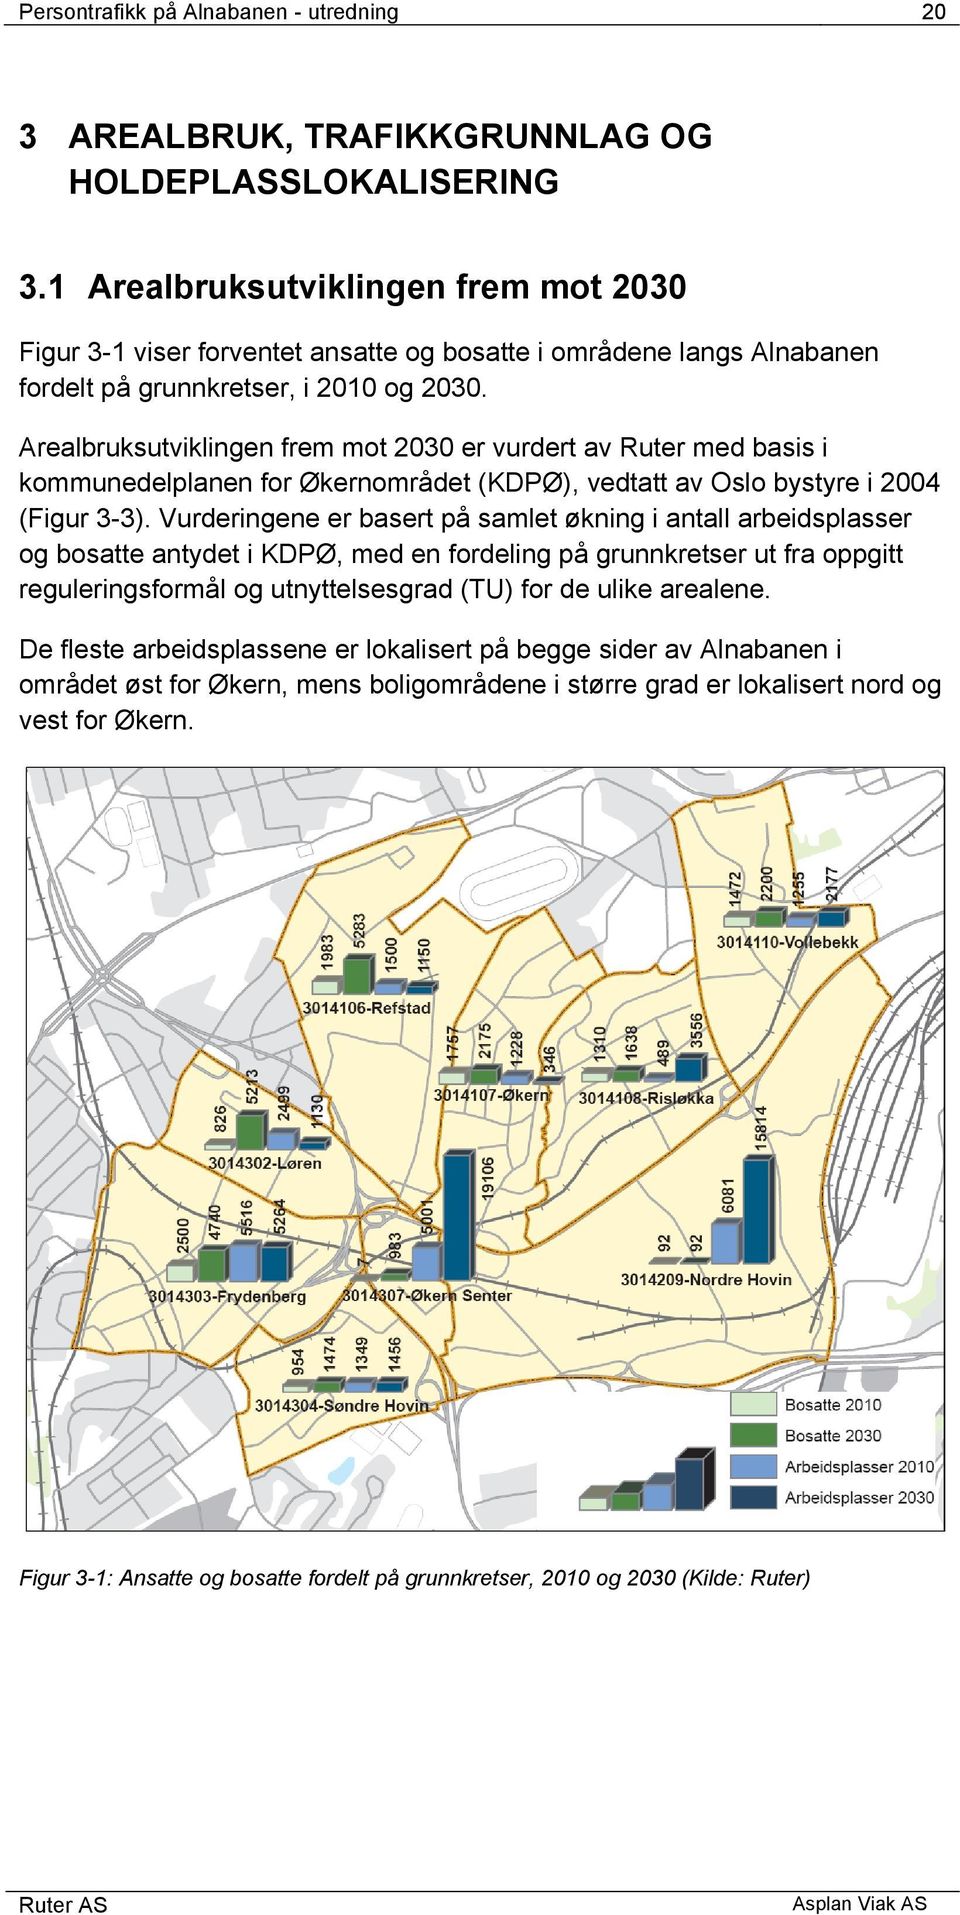 Arealbruksutviklingen frem mot 2030 er vurdert av Ruter med basis i kommunedelplanen for Økernområdet (KDPØ), vedtatt av Oslo bystyre i 2004 (Figur 3-3).